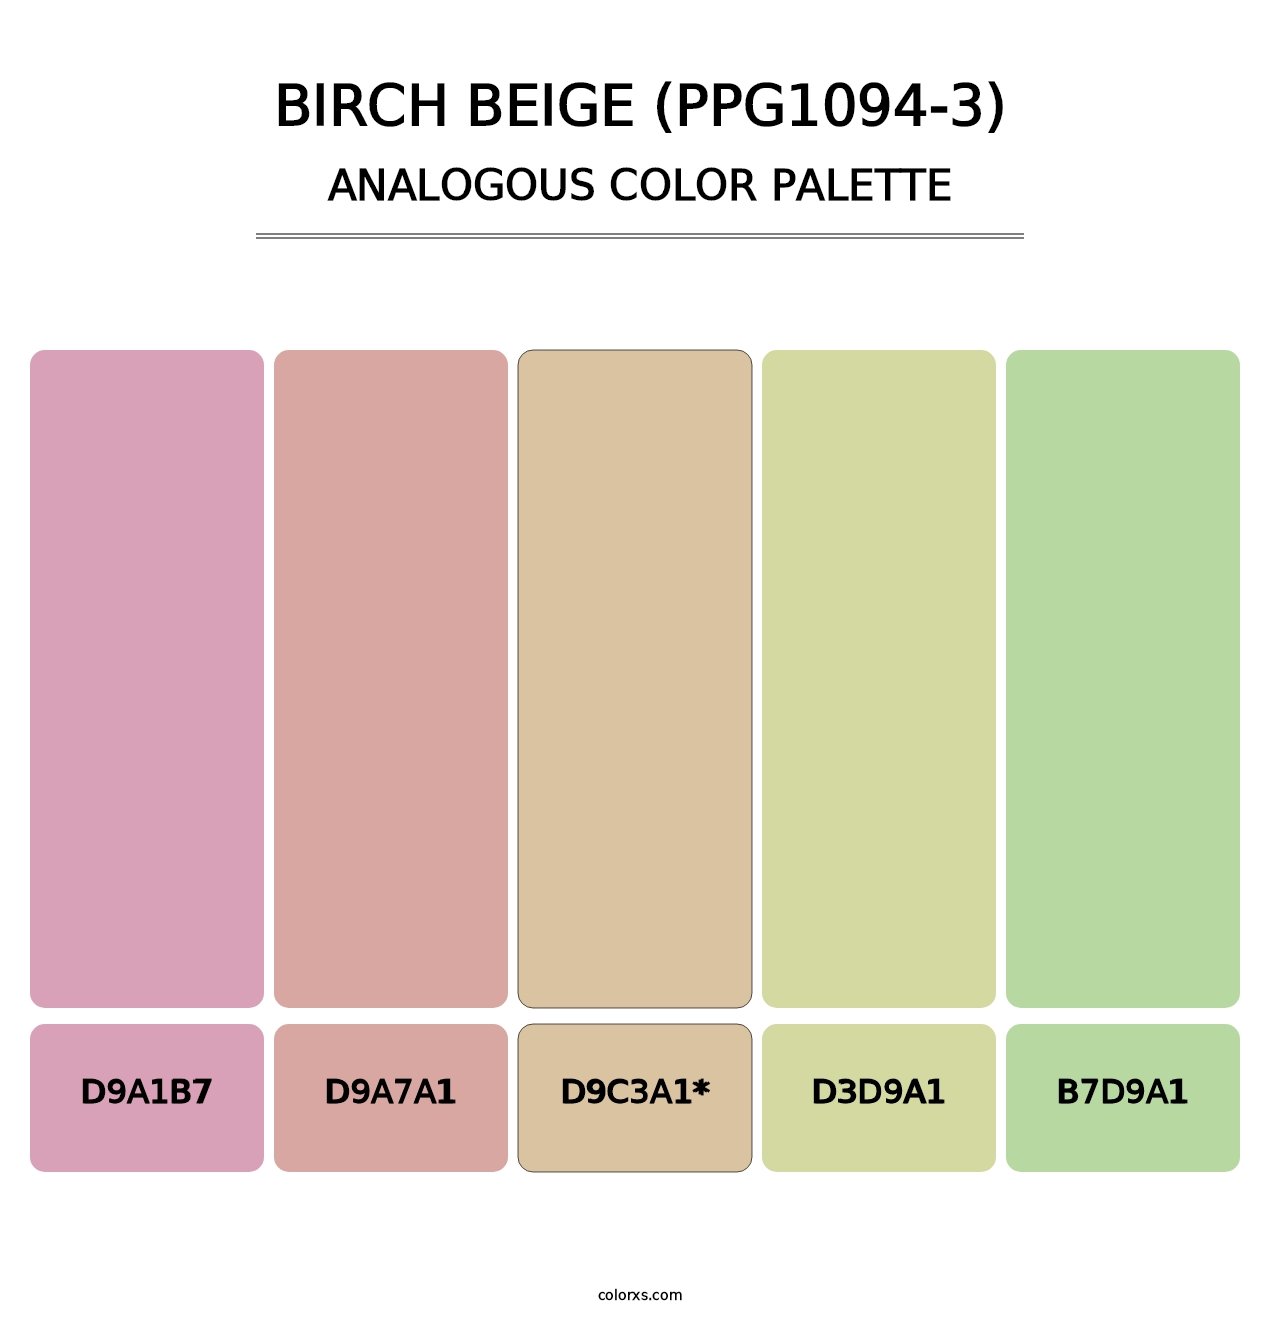 Birch Beige (PPG1094-3) - Analogous Color Palette